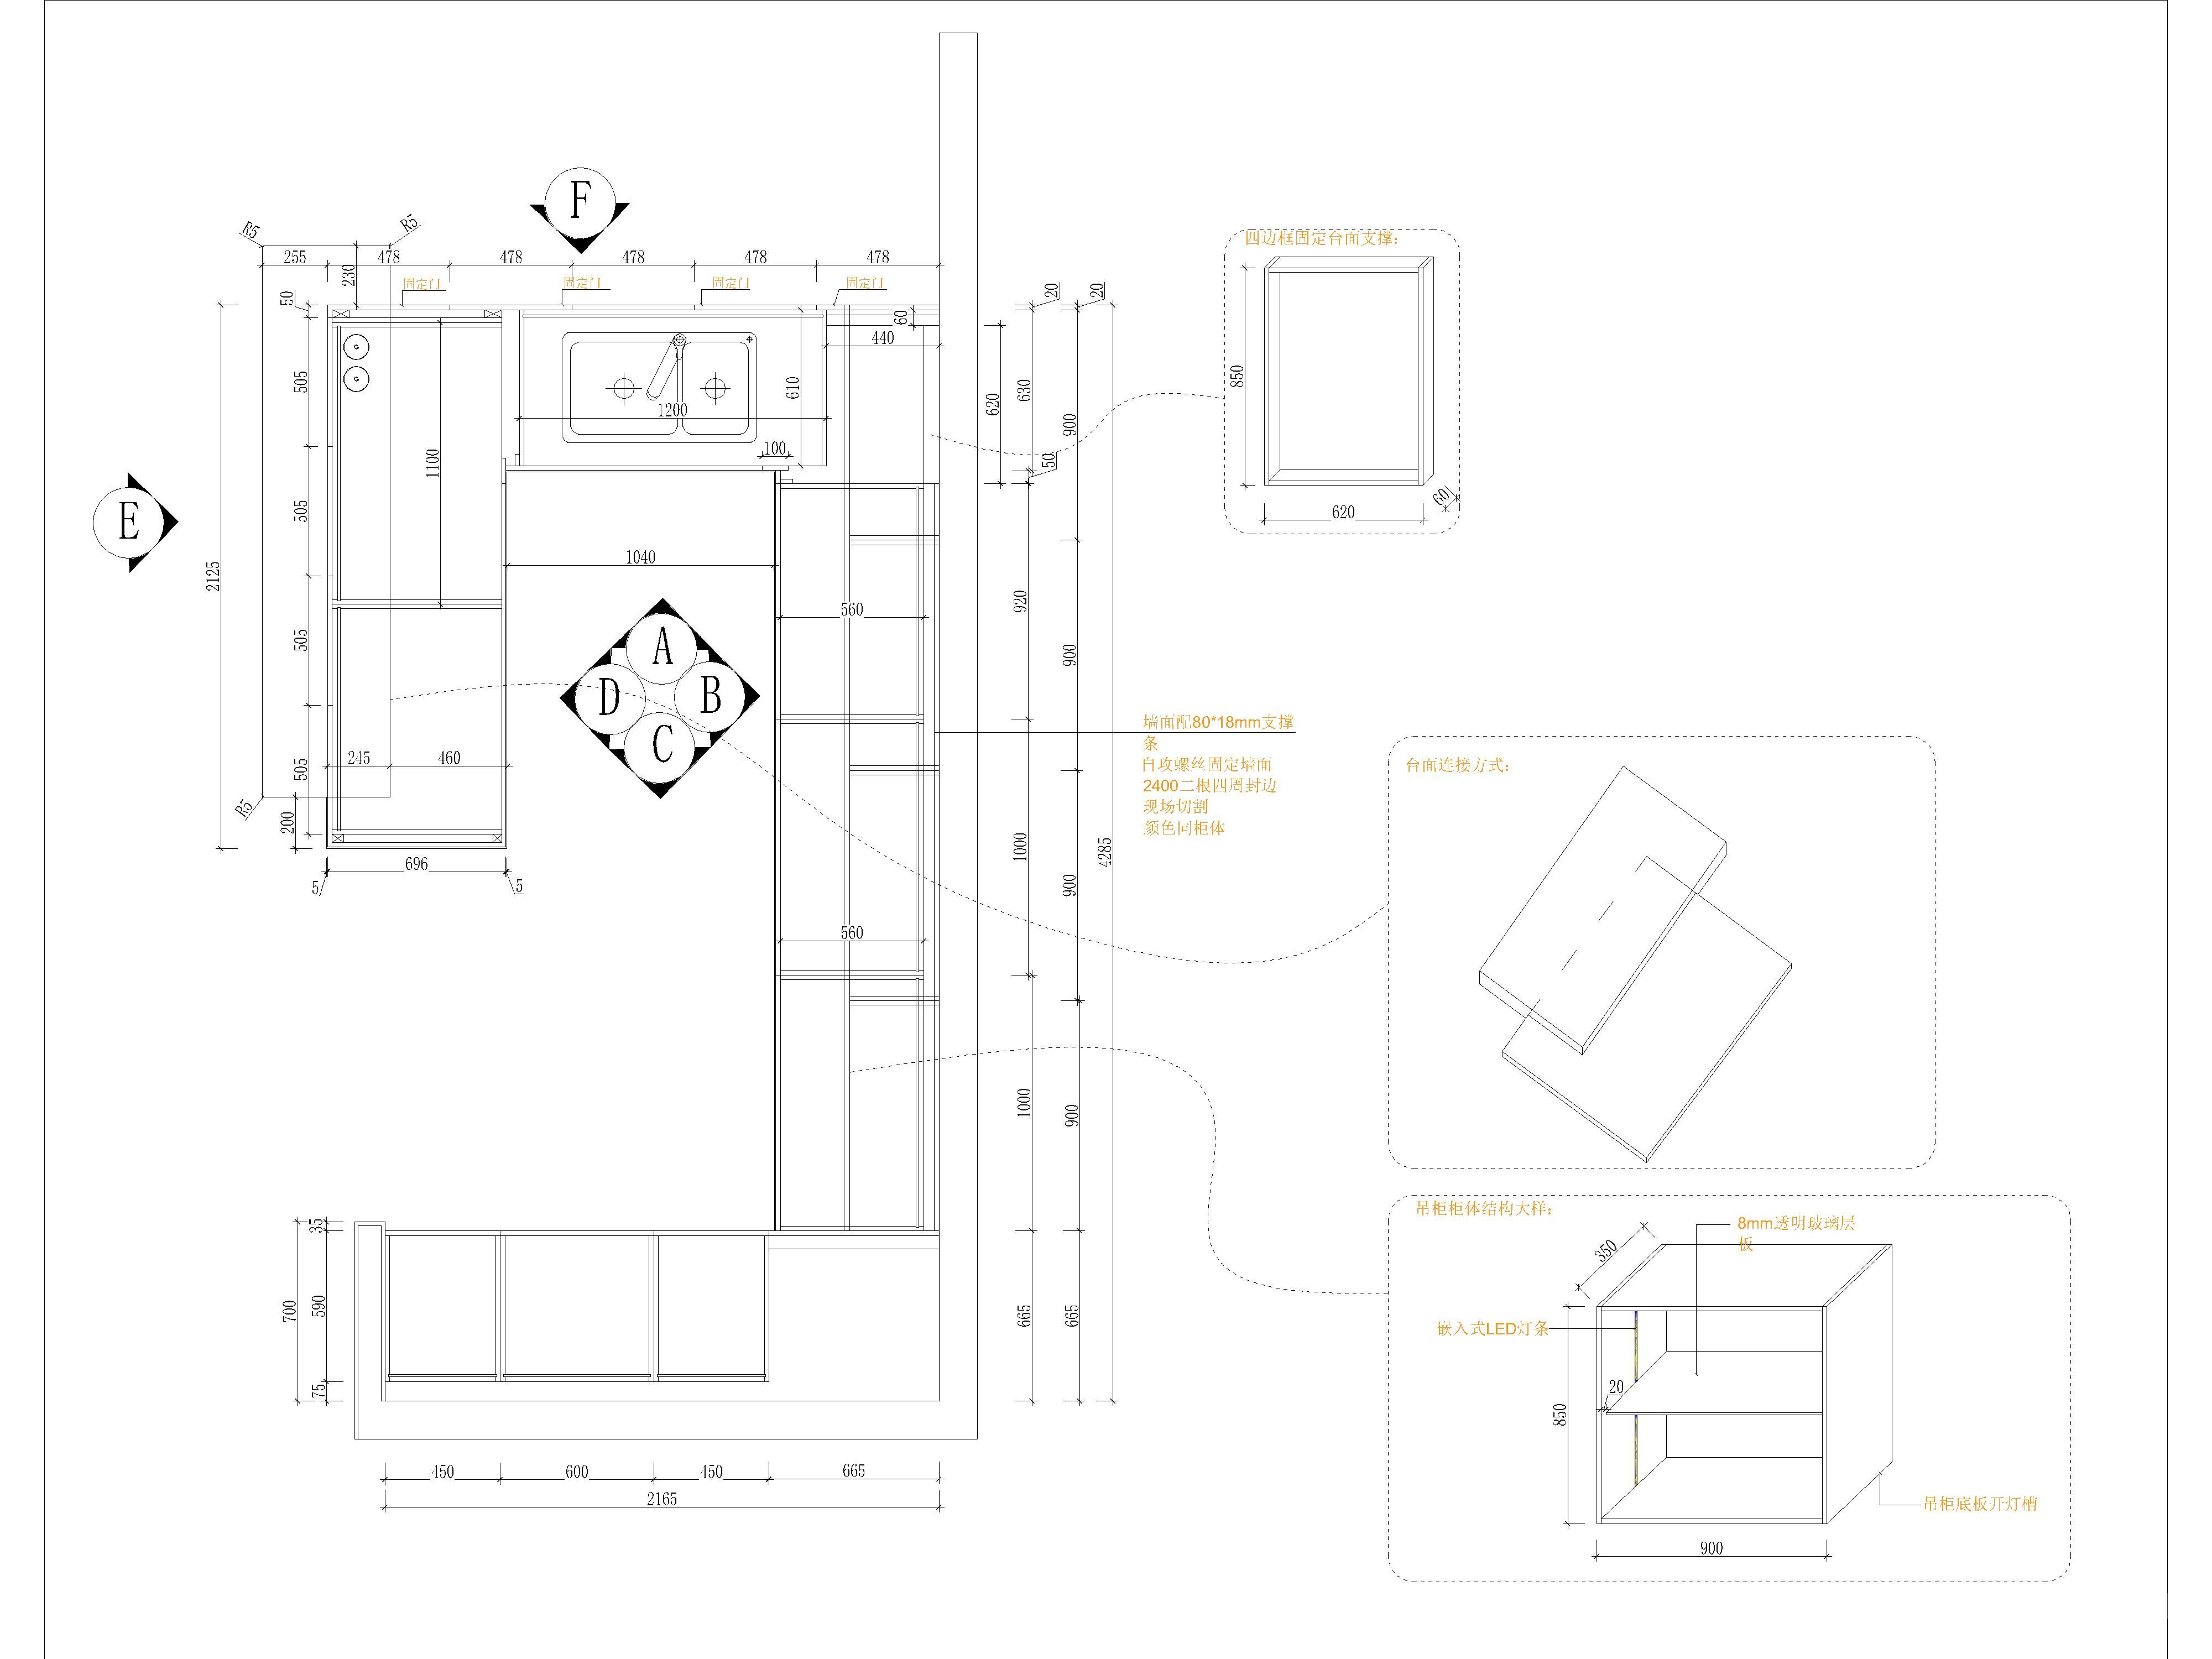 定制家居家具橱柜案例及工艺标准设计规范cad图纸合集施工图